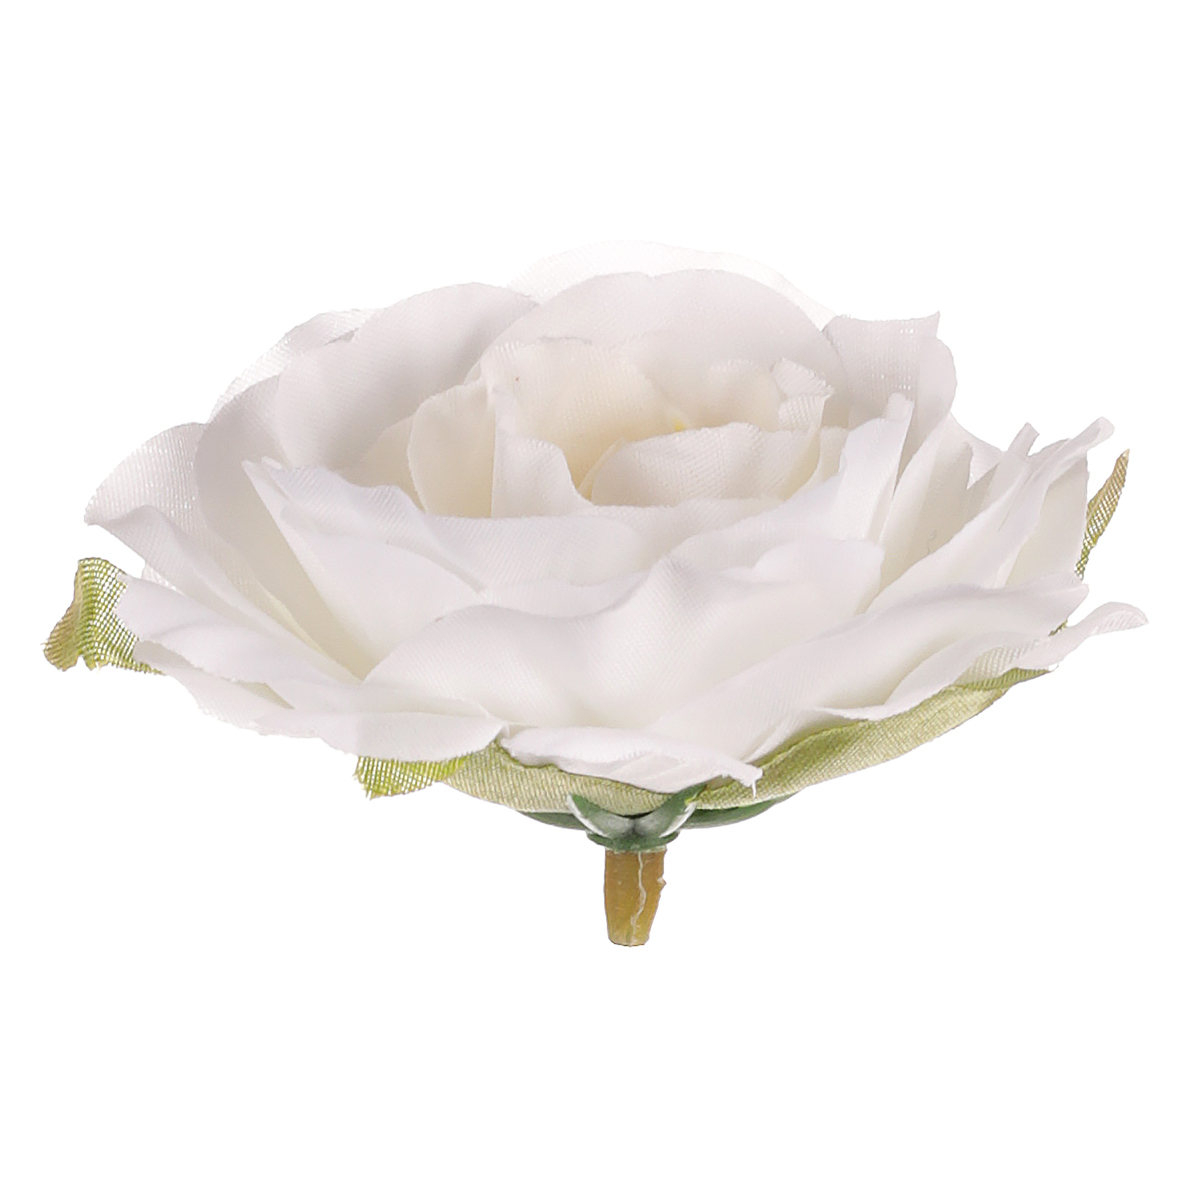 Růže, barva bílá. Květina umělá vazbová. Cena za balení 12 kusů.